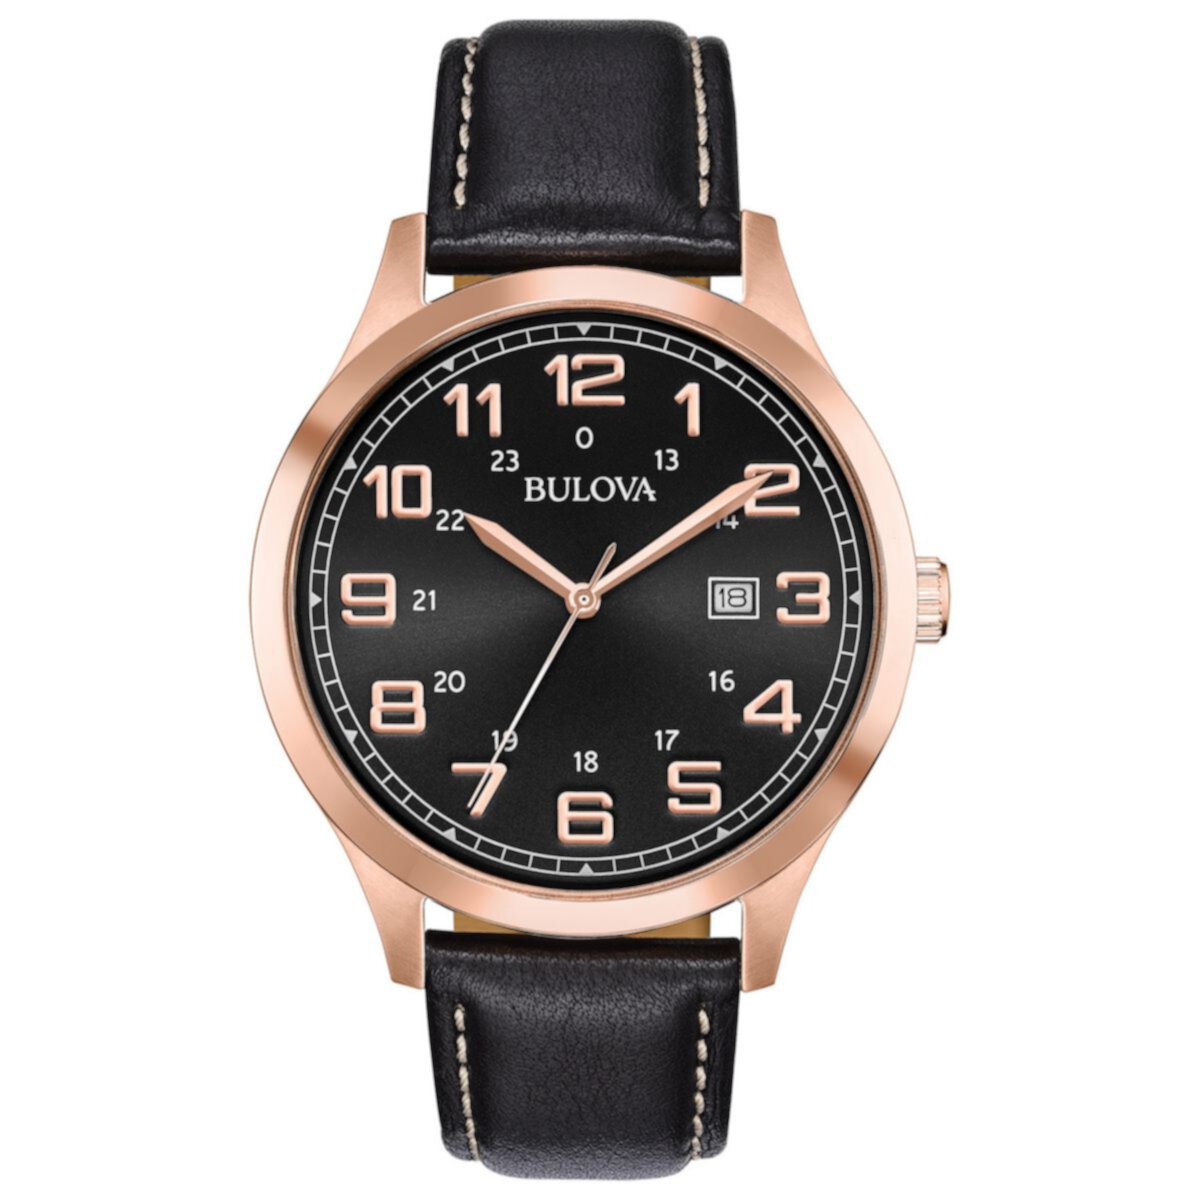 Мужские часы Bulova розового цвета из нержавеющей стали и кожи - 97B164 Bulova